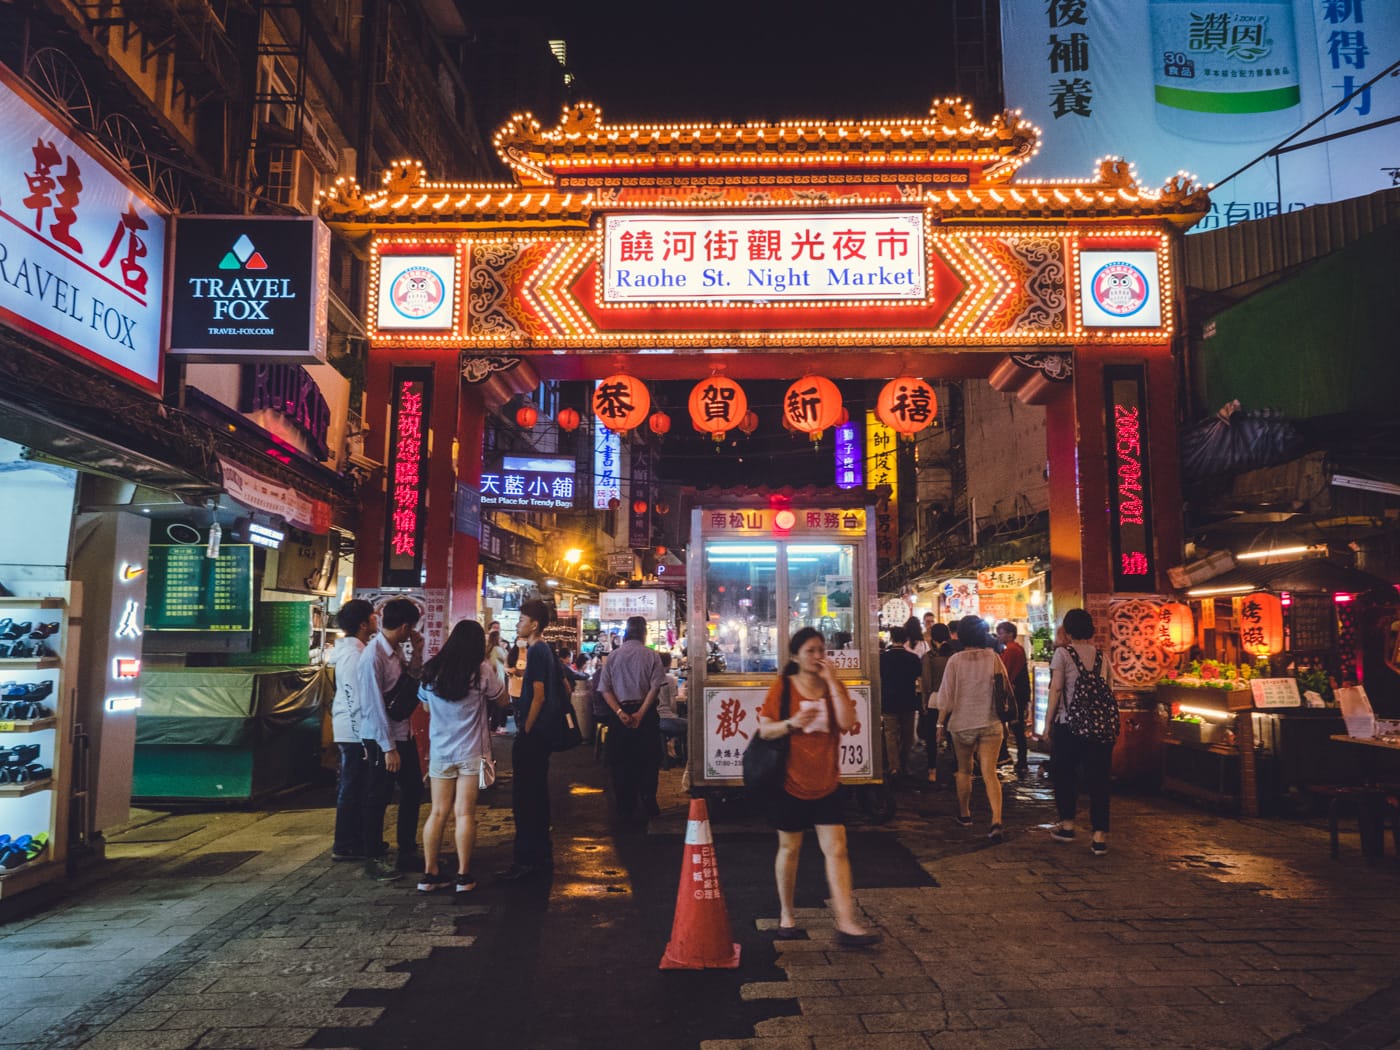 Taiwan - Raohe Night Market entrance